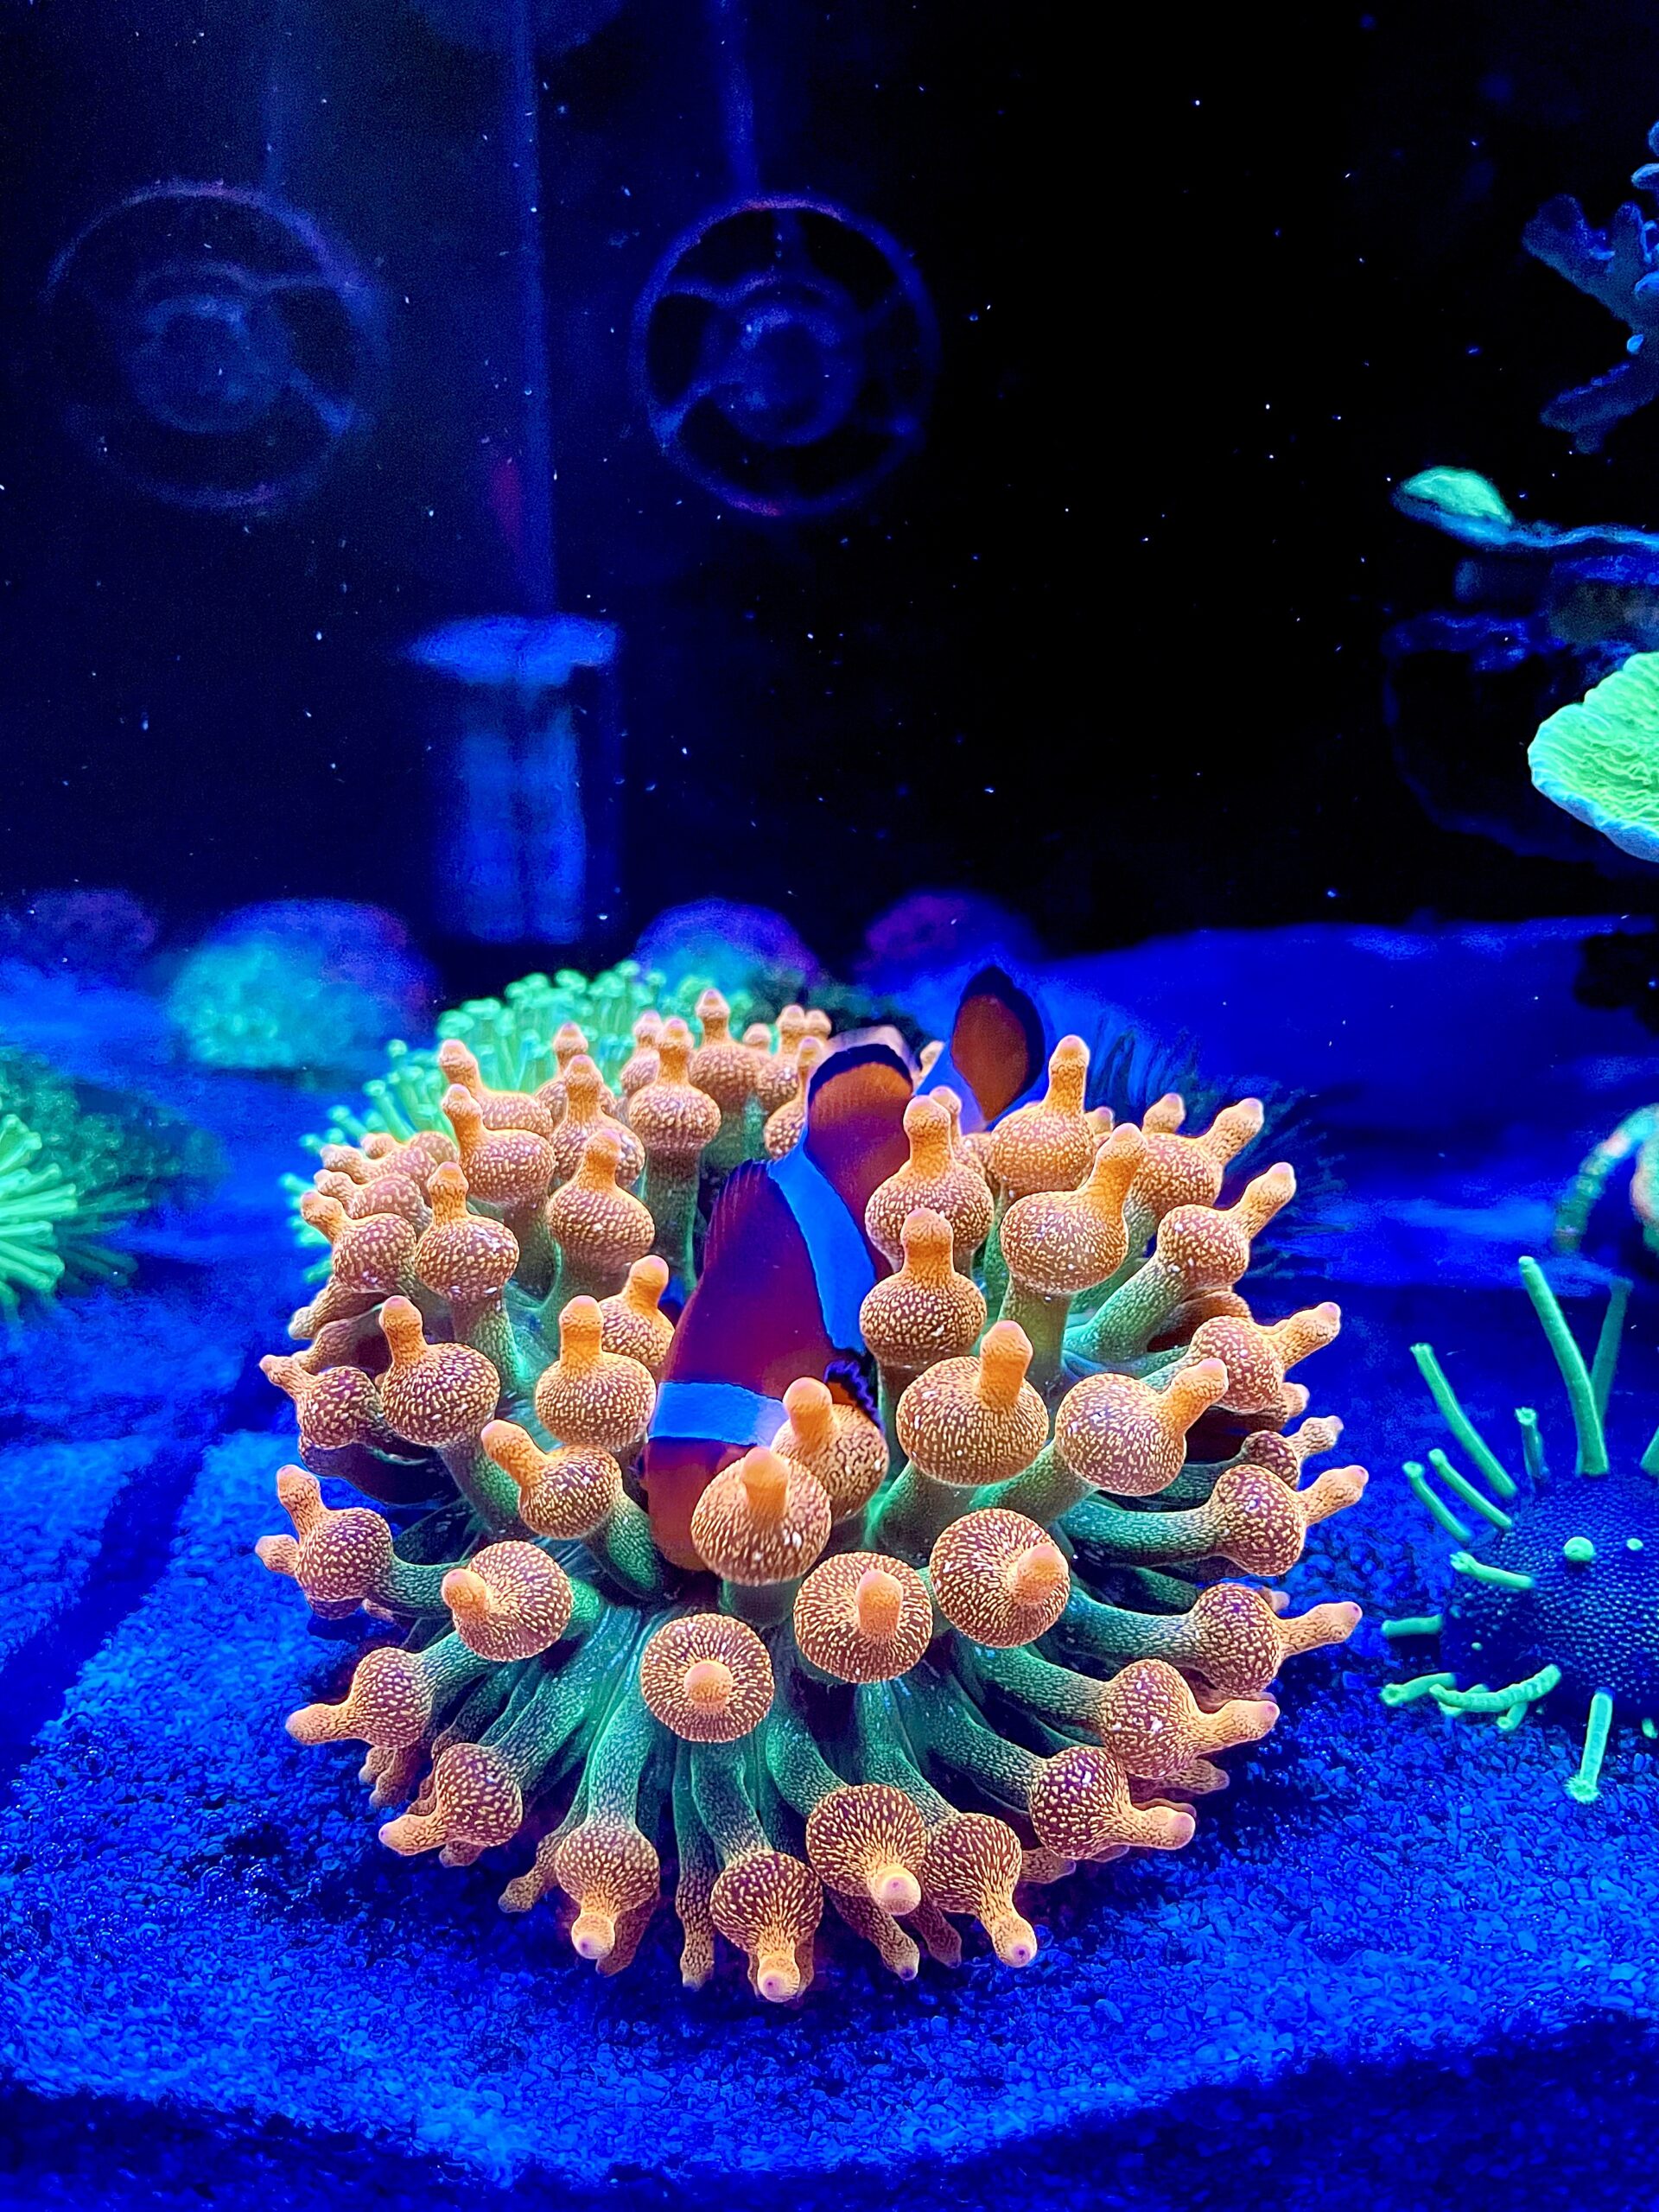 pez-payaso-en-burbuja-punta-escama-de-anemona-1